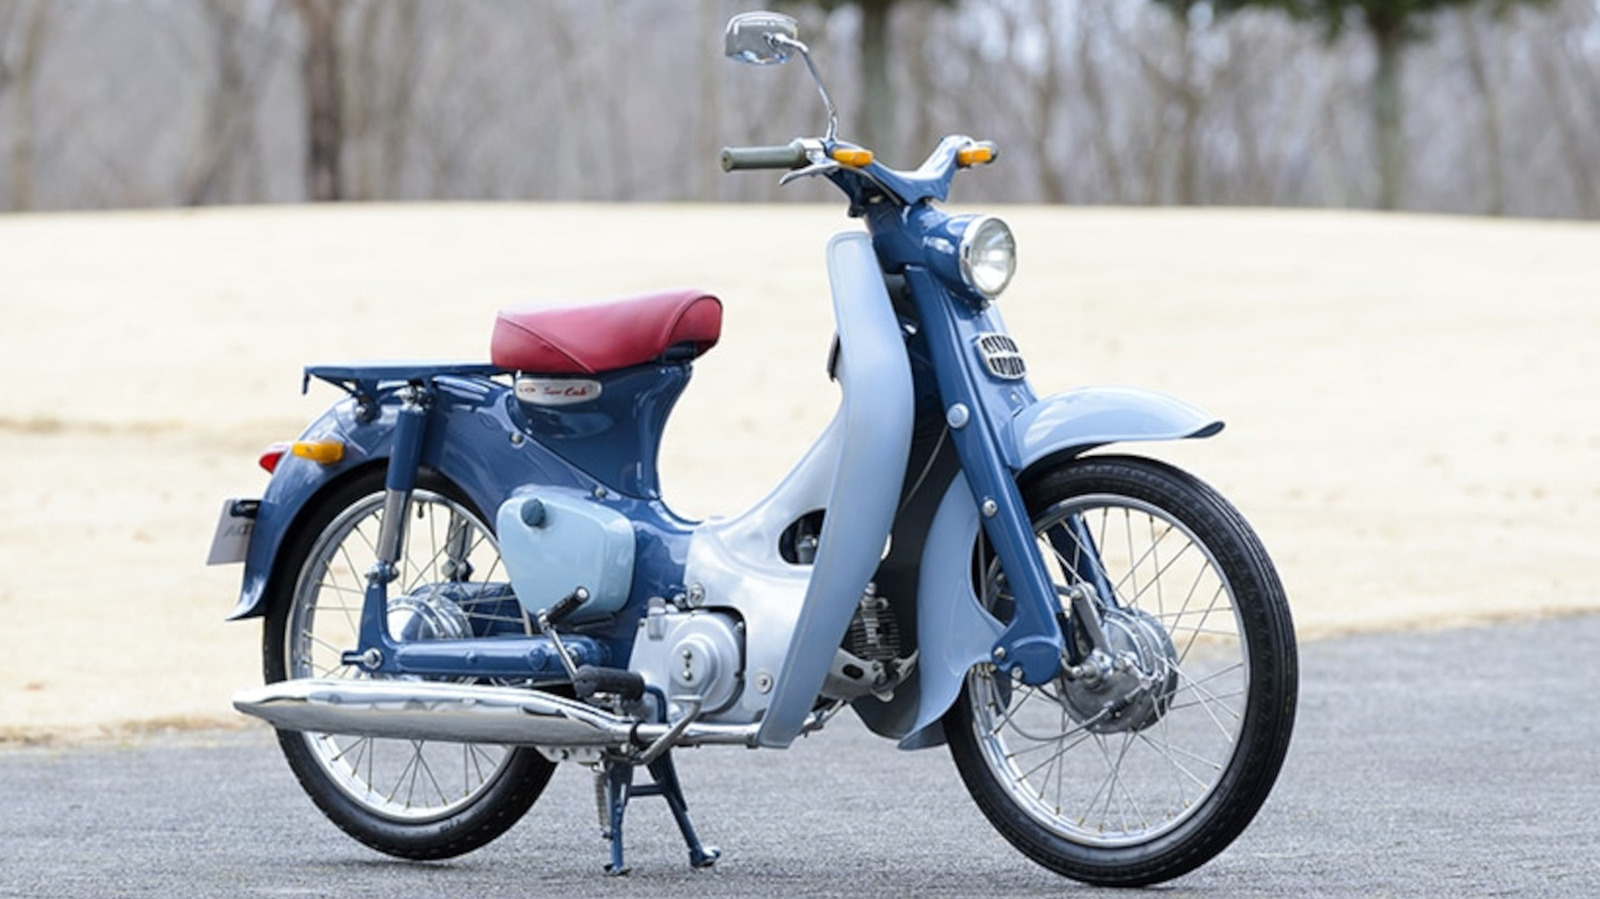 Todo lo que hay que saber sobre la motocicleta Super Cub de Honda